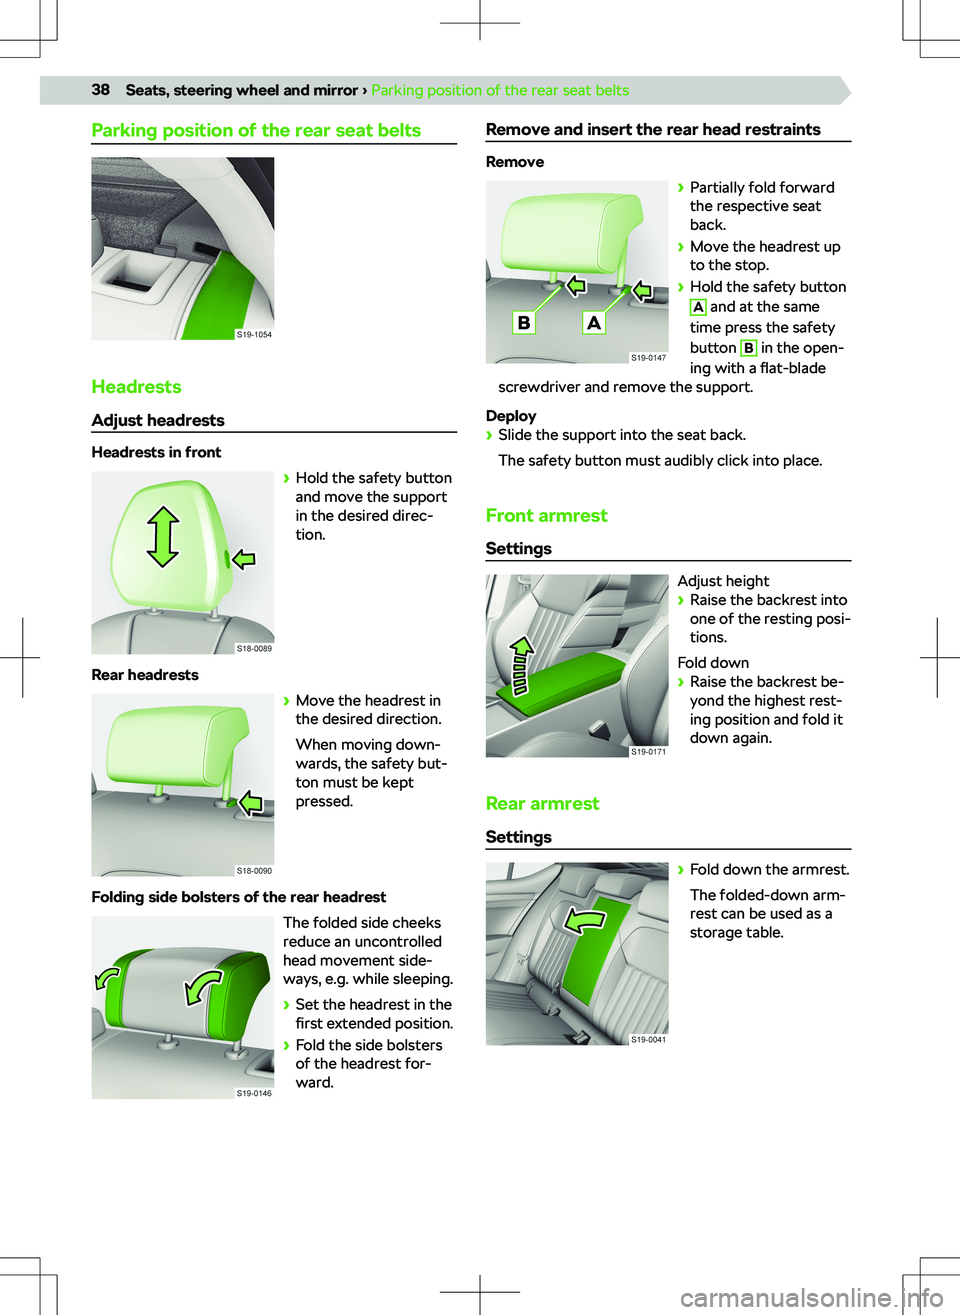 SKODA SUPERB 2021  Owner´s Manual Parking position of the rear seat belts
Headrests
Adjust headrests
Headrests in front 